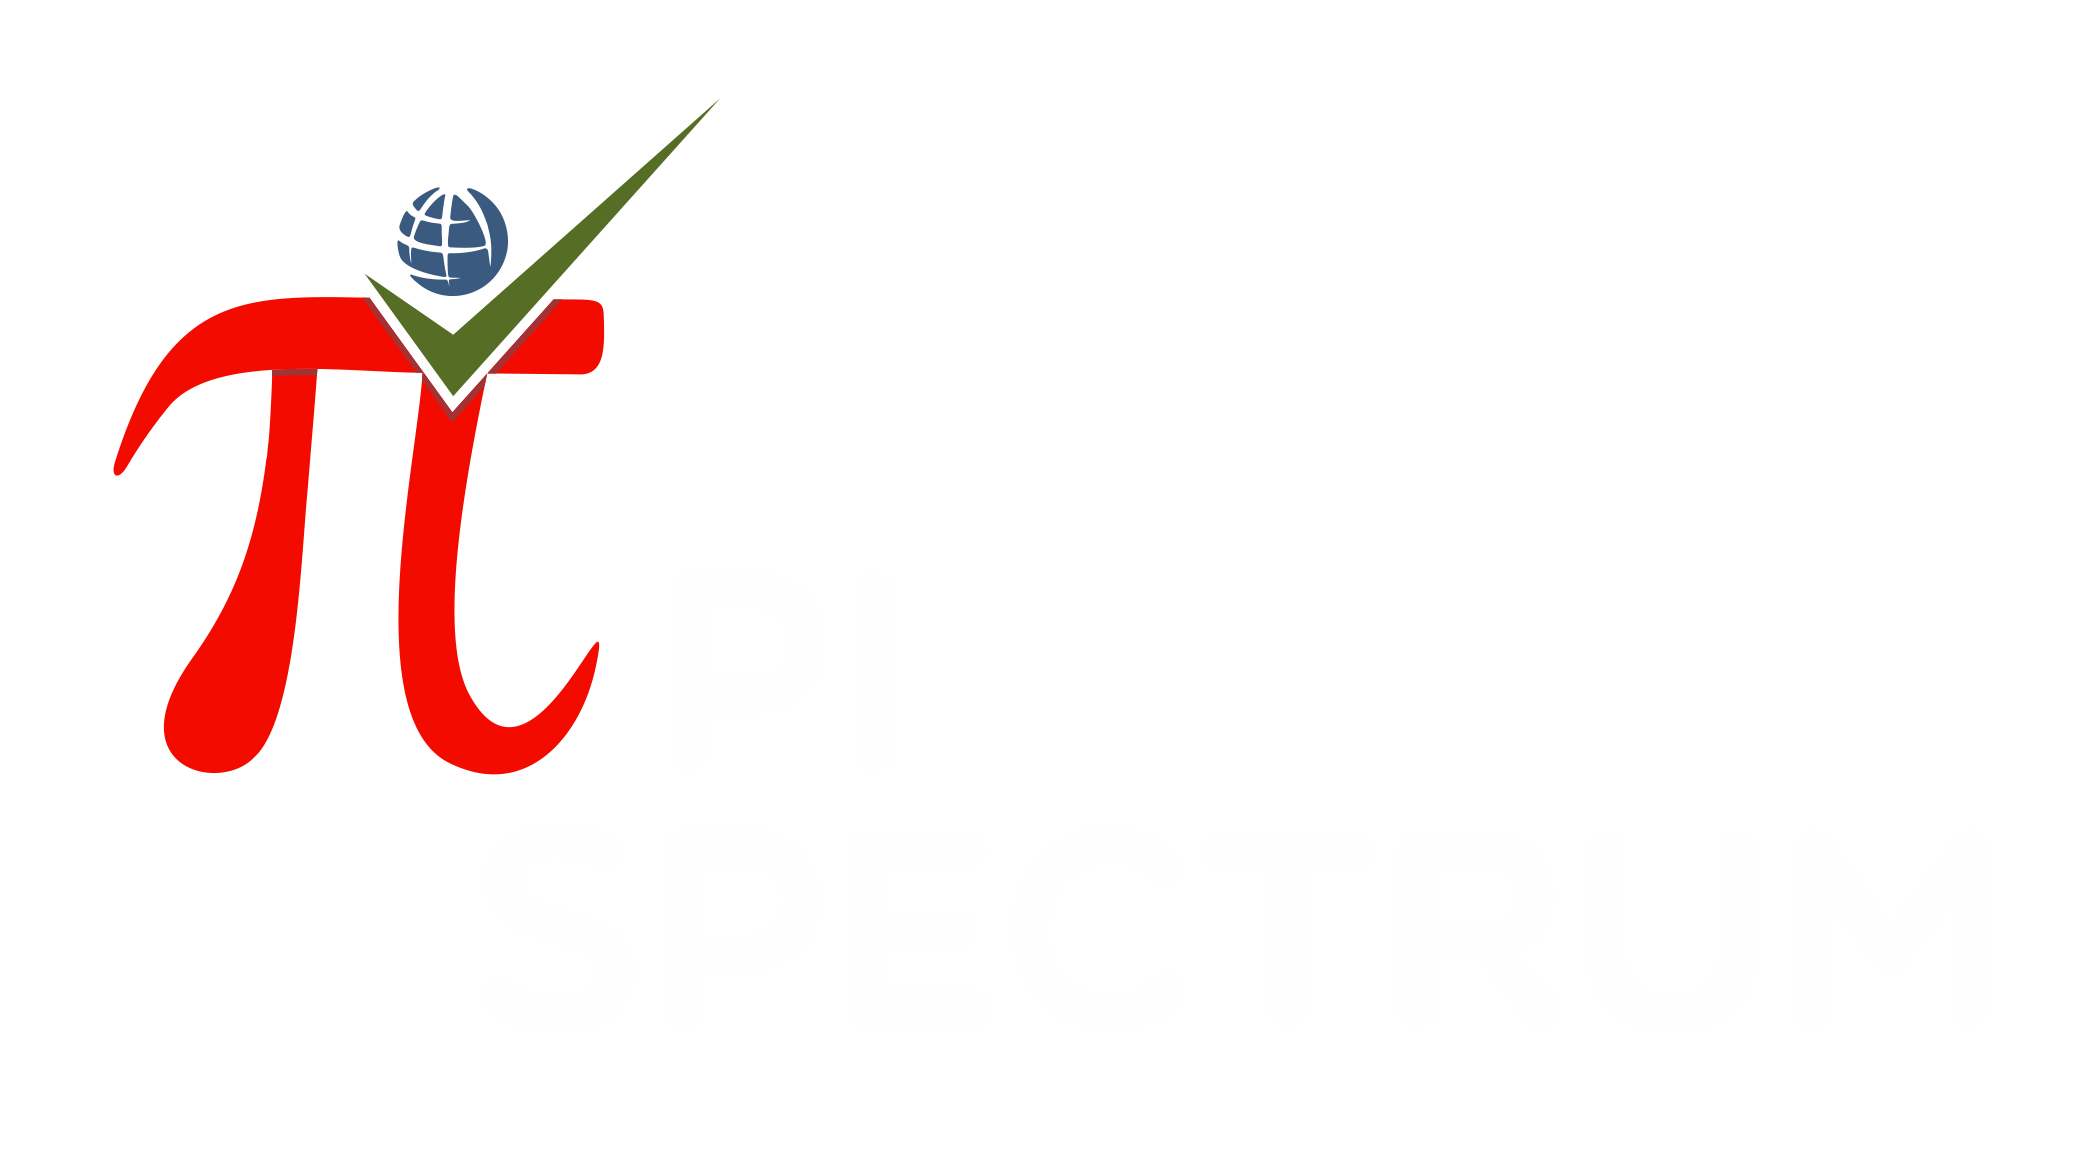 pi spectrum - logo text white